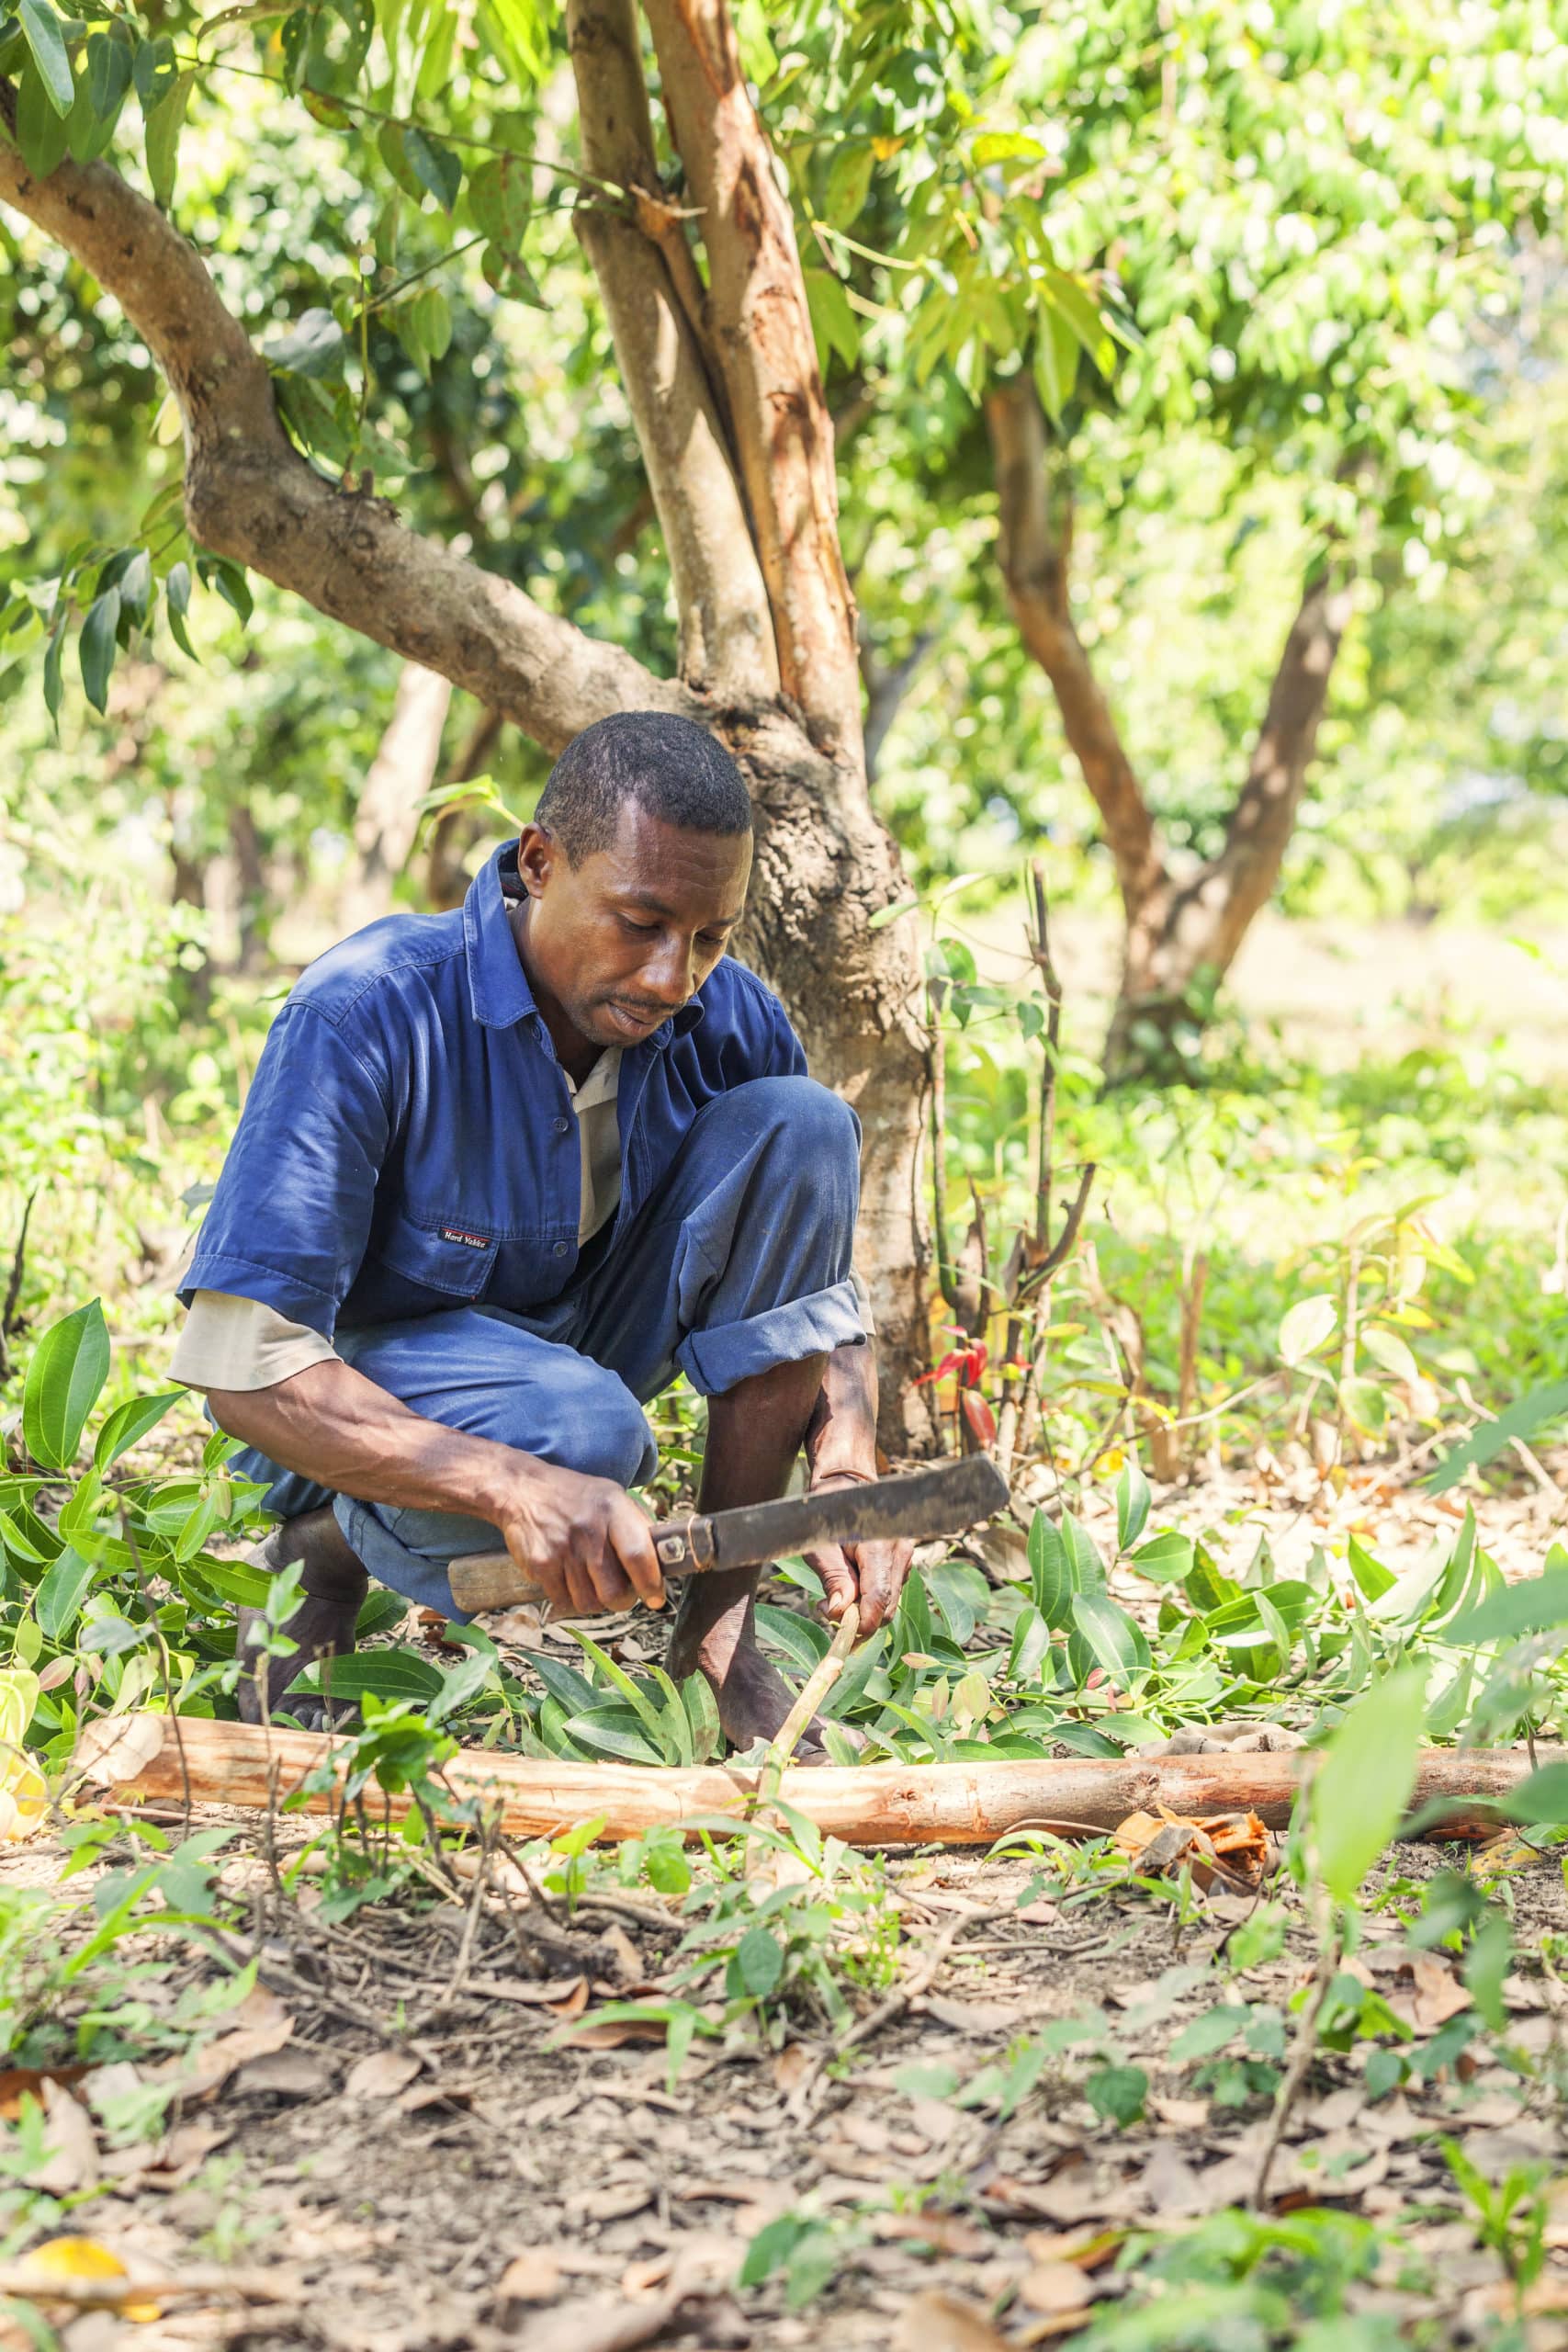 Récolte de cannelle à Madagascar. La cannelle peut être récoltée lorsque le cannelier a 3 ans… mais en prélevant seulement une branche sur 3 pour être sûr de garantir des récoltes les années suivantes, dans la durée